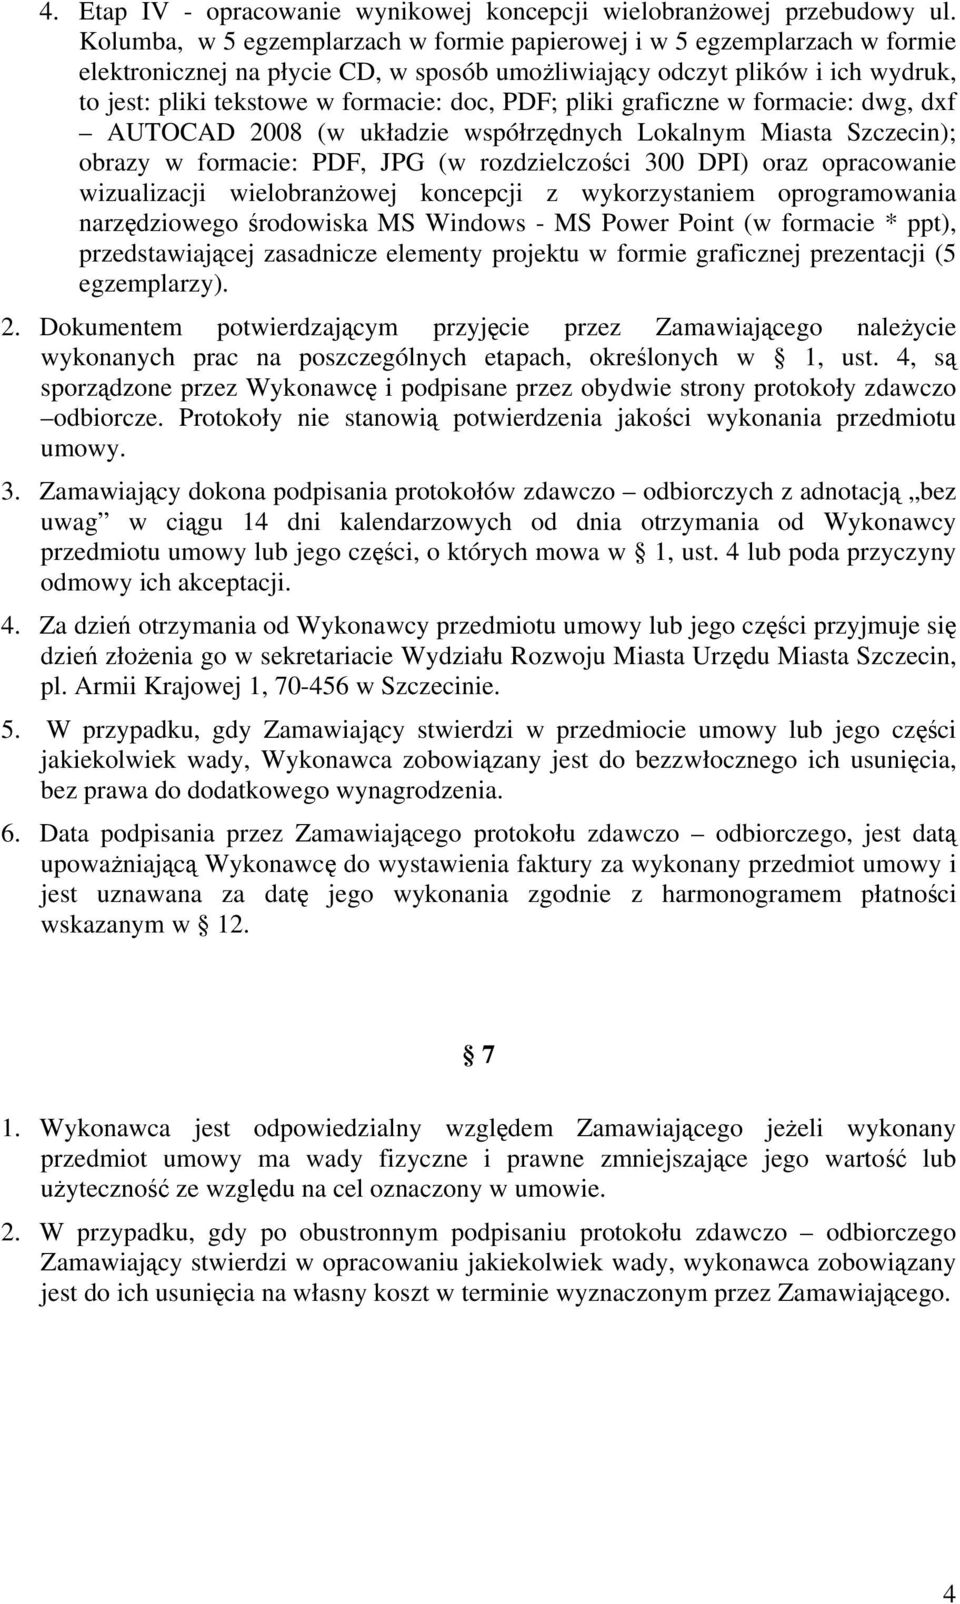 PDF; pliki graficzne w formacie: dwg, dxf AUTOCAD 2008 (w układzie współrzędnych Lokalnym Miasta Szczecin); obrazy w formacie: PDF, JPG (w rozdzielczości 300 DPI) oraz opracowanie wizualizacji